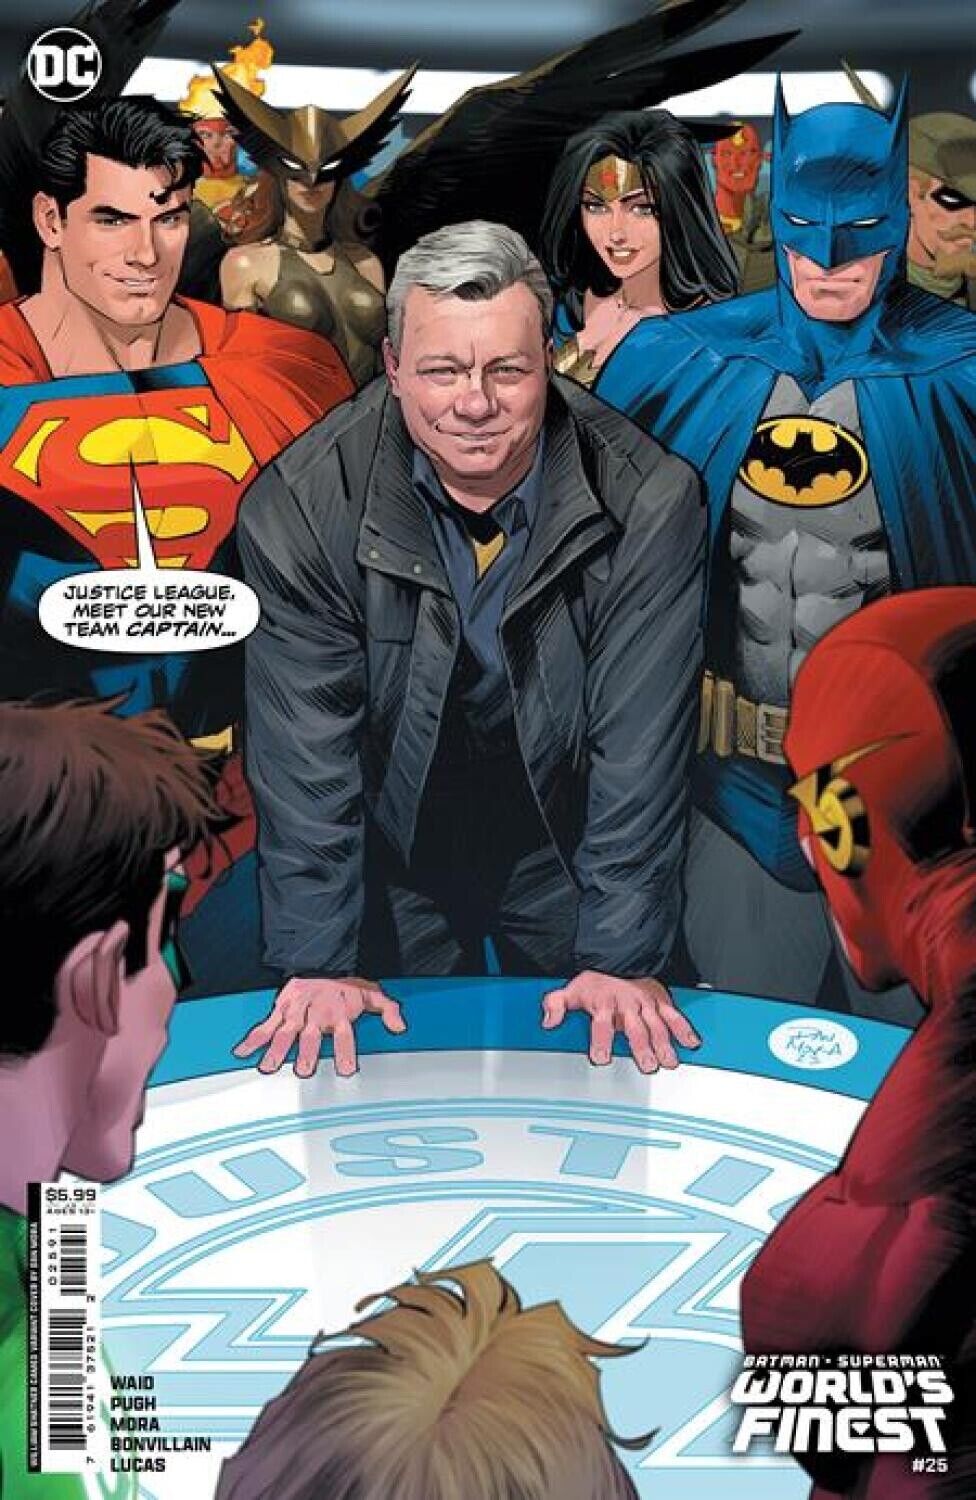 Batman Superman Worlds Finest DC Comics Shatner Var Cover NM or better Star Trek